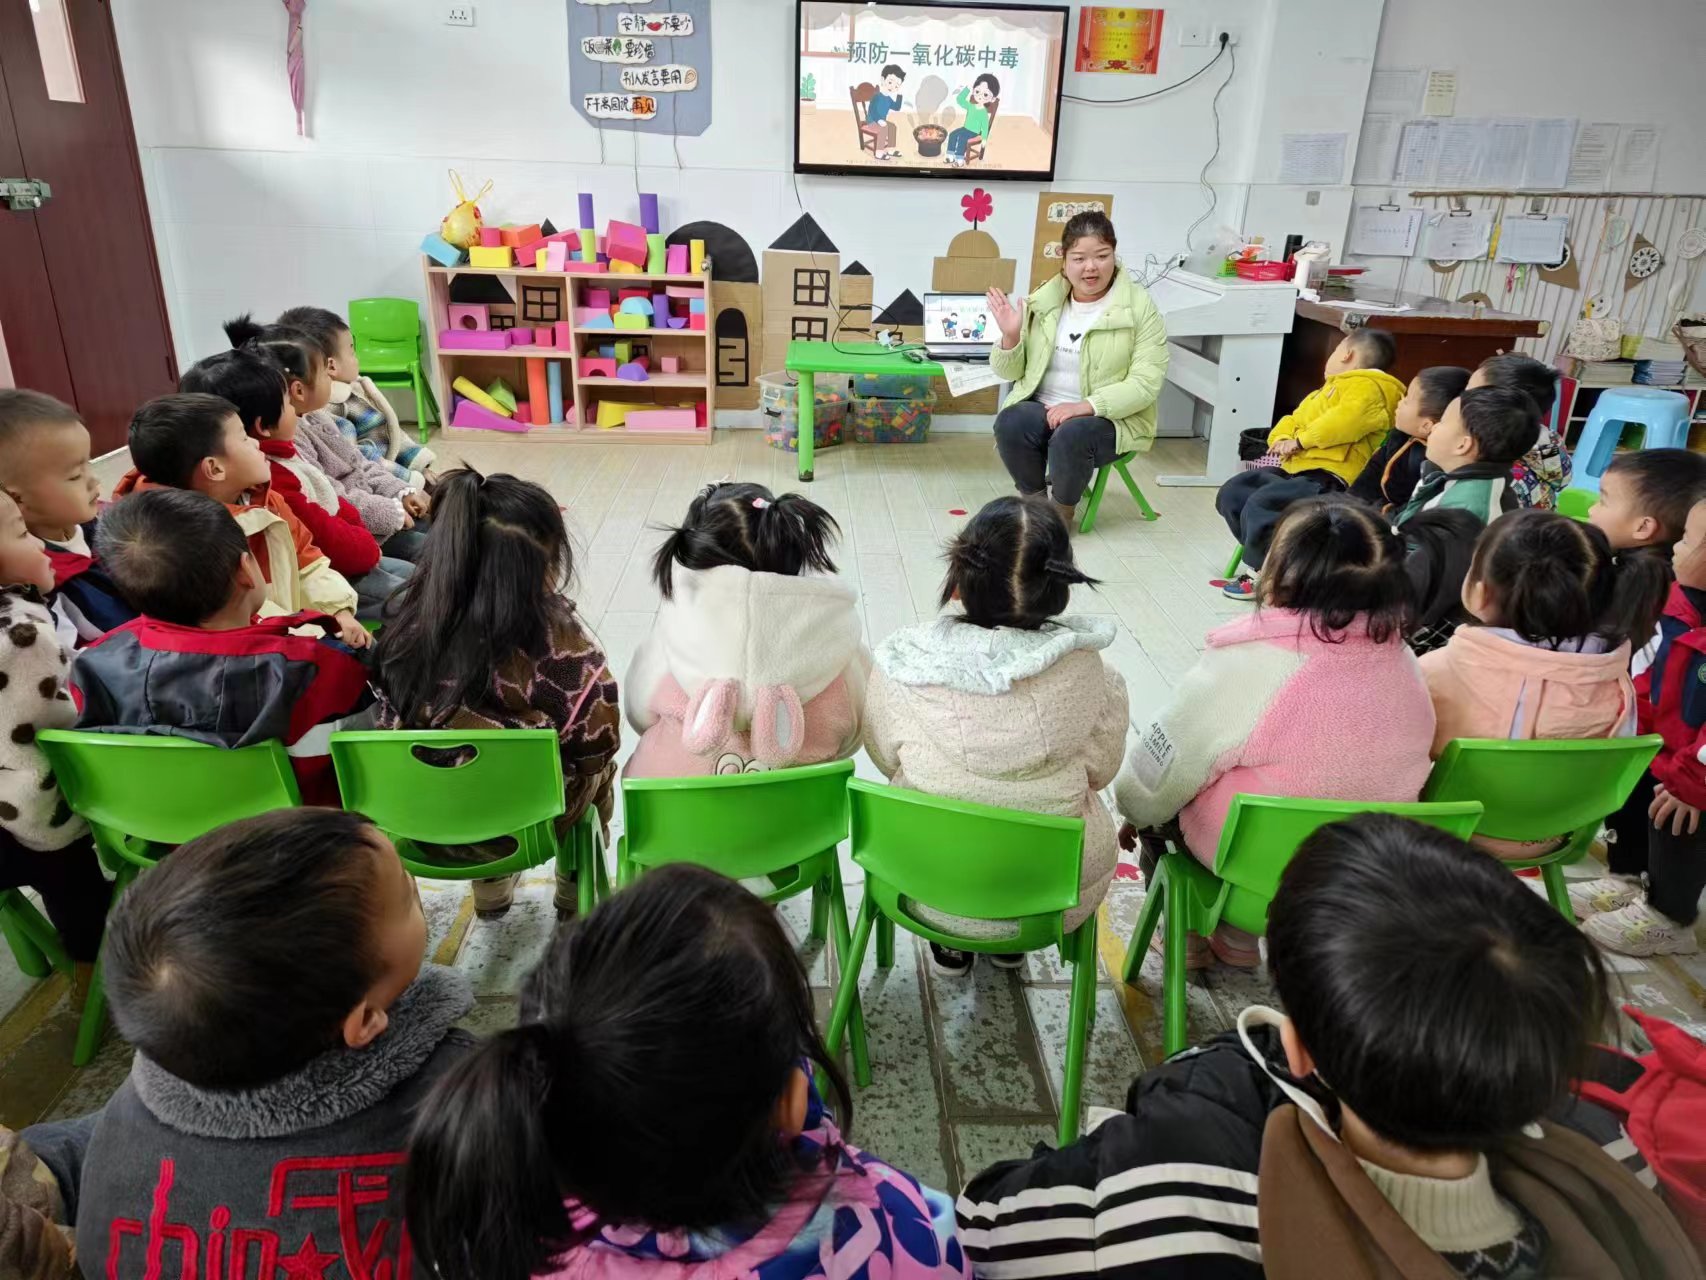 冬季安全在心 防范警惕再行——汉阴县漩涡镇中心幼儿园开展冬季安全系列活动